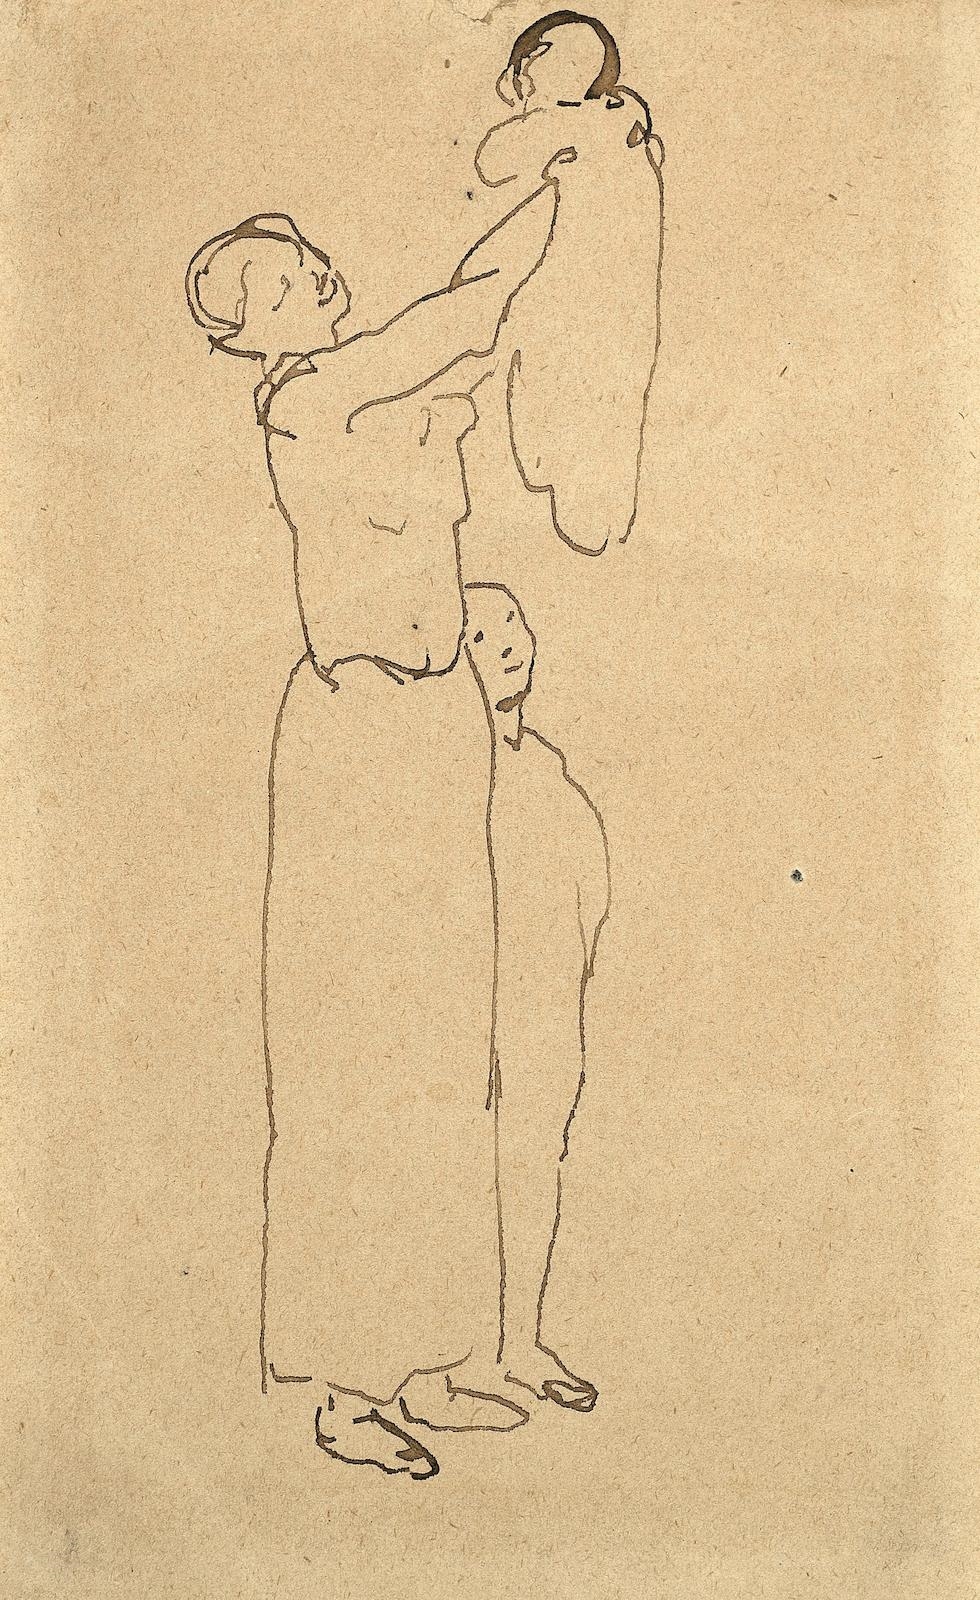 Maternité by Pablo Picasso, 1905